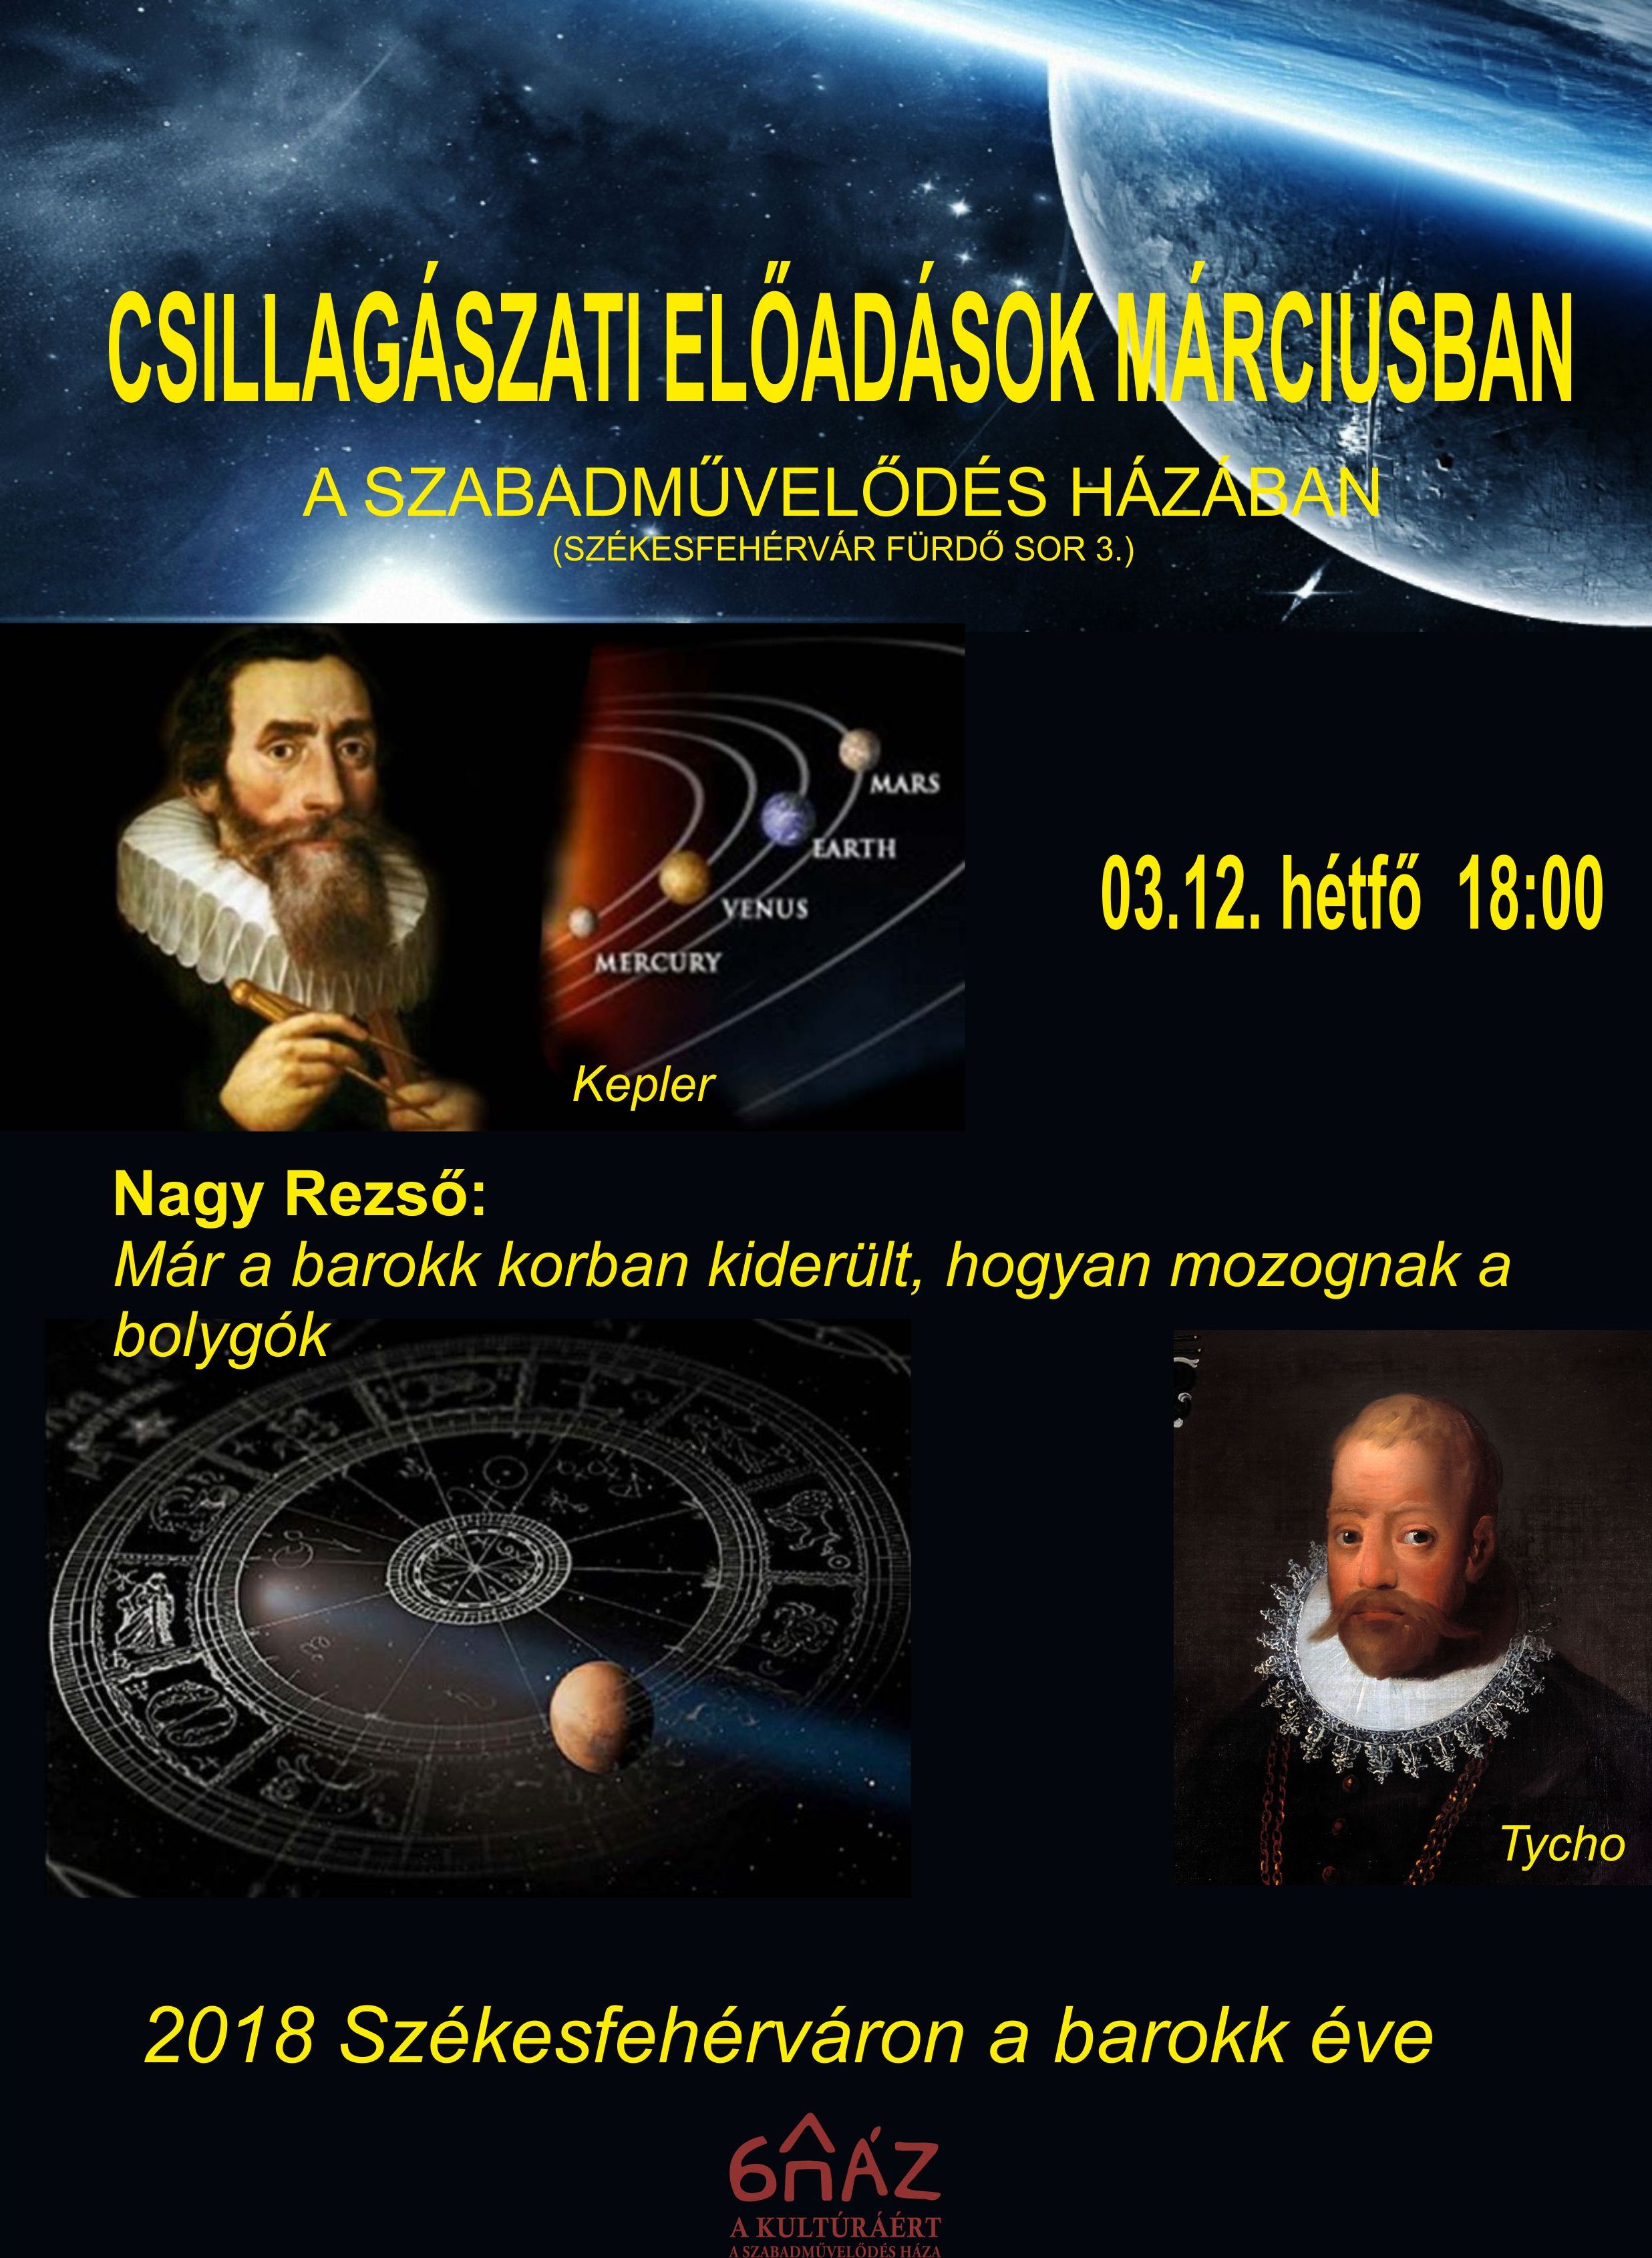 Csillagászat és barokk - érdekes előadás lesz ma A Szabadművelődés Házában